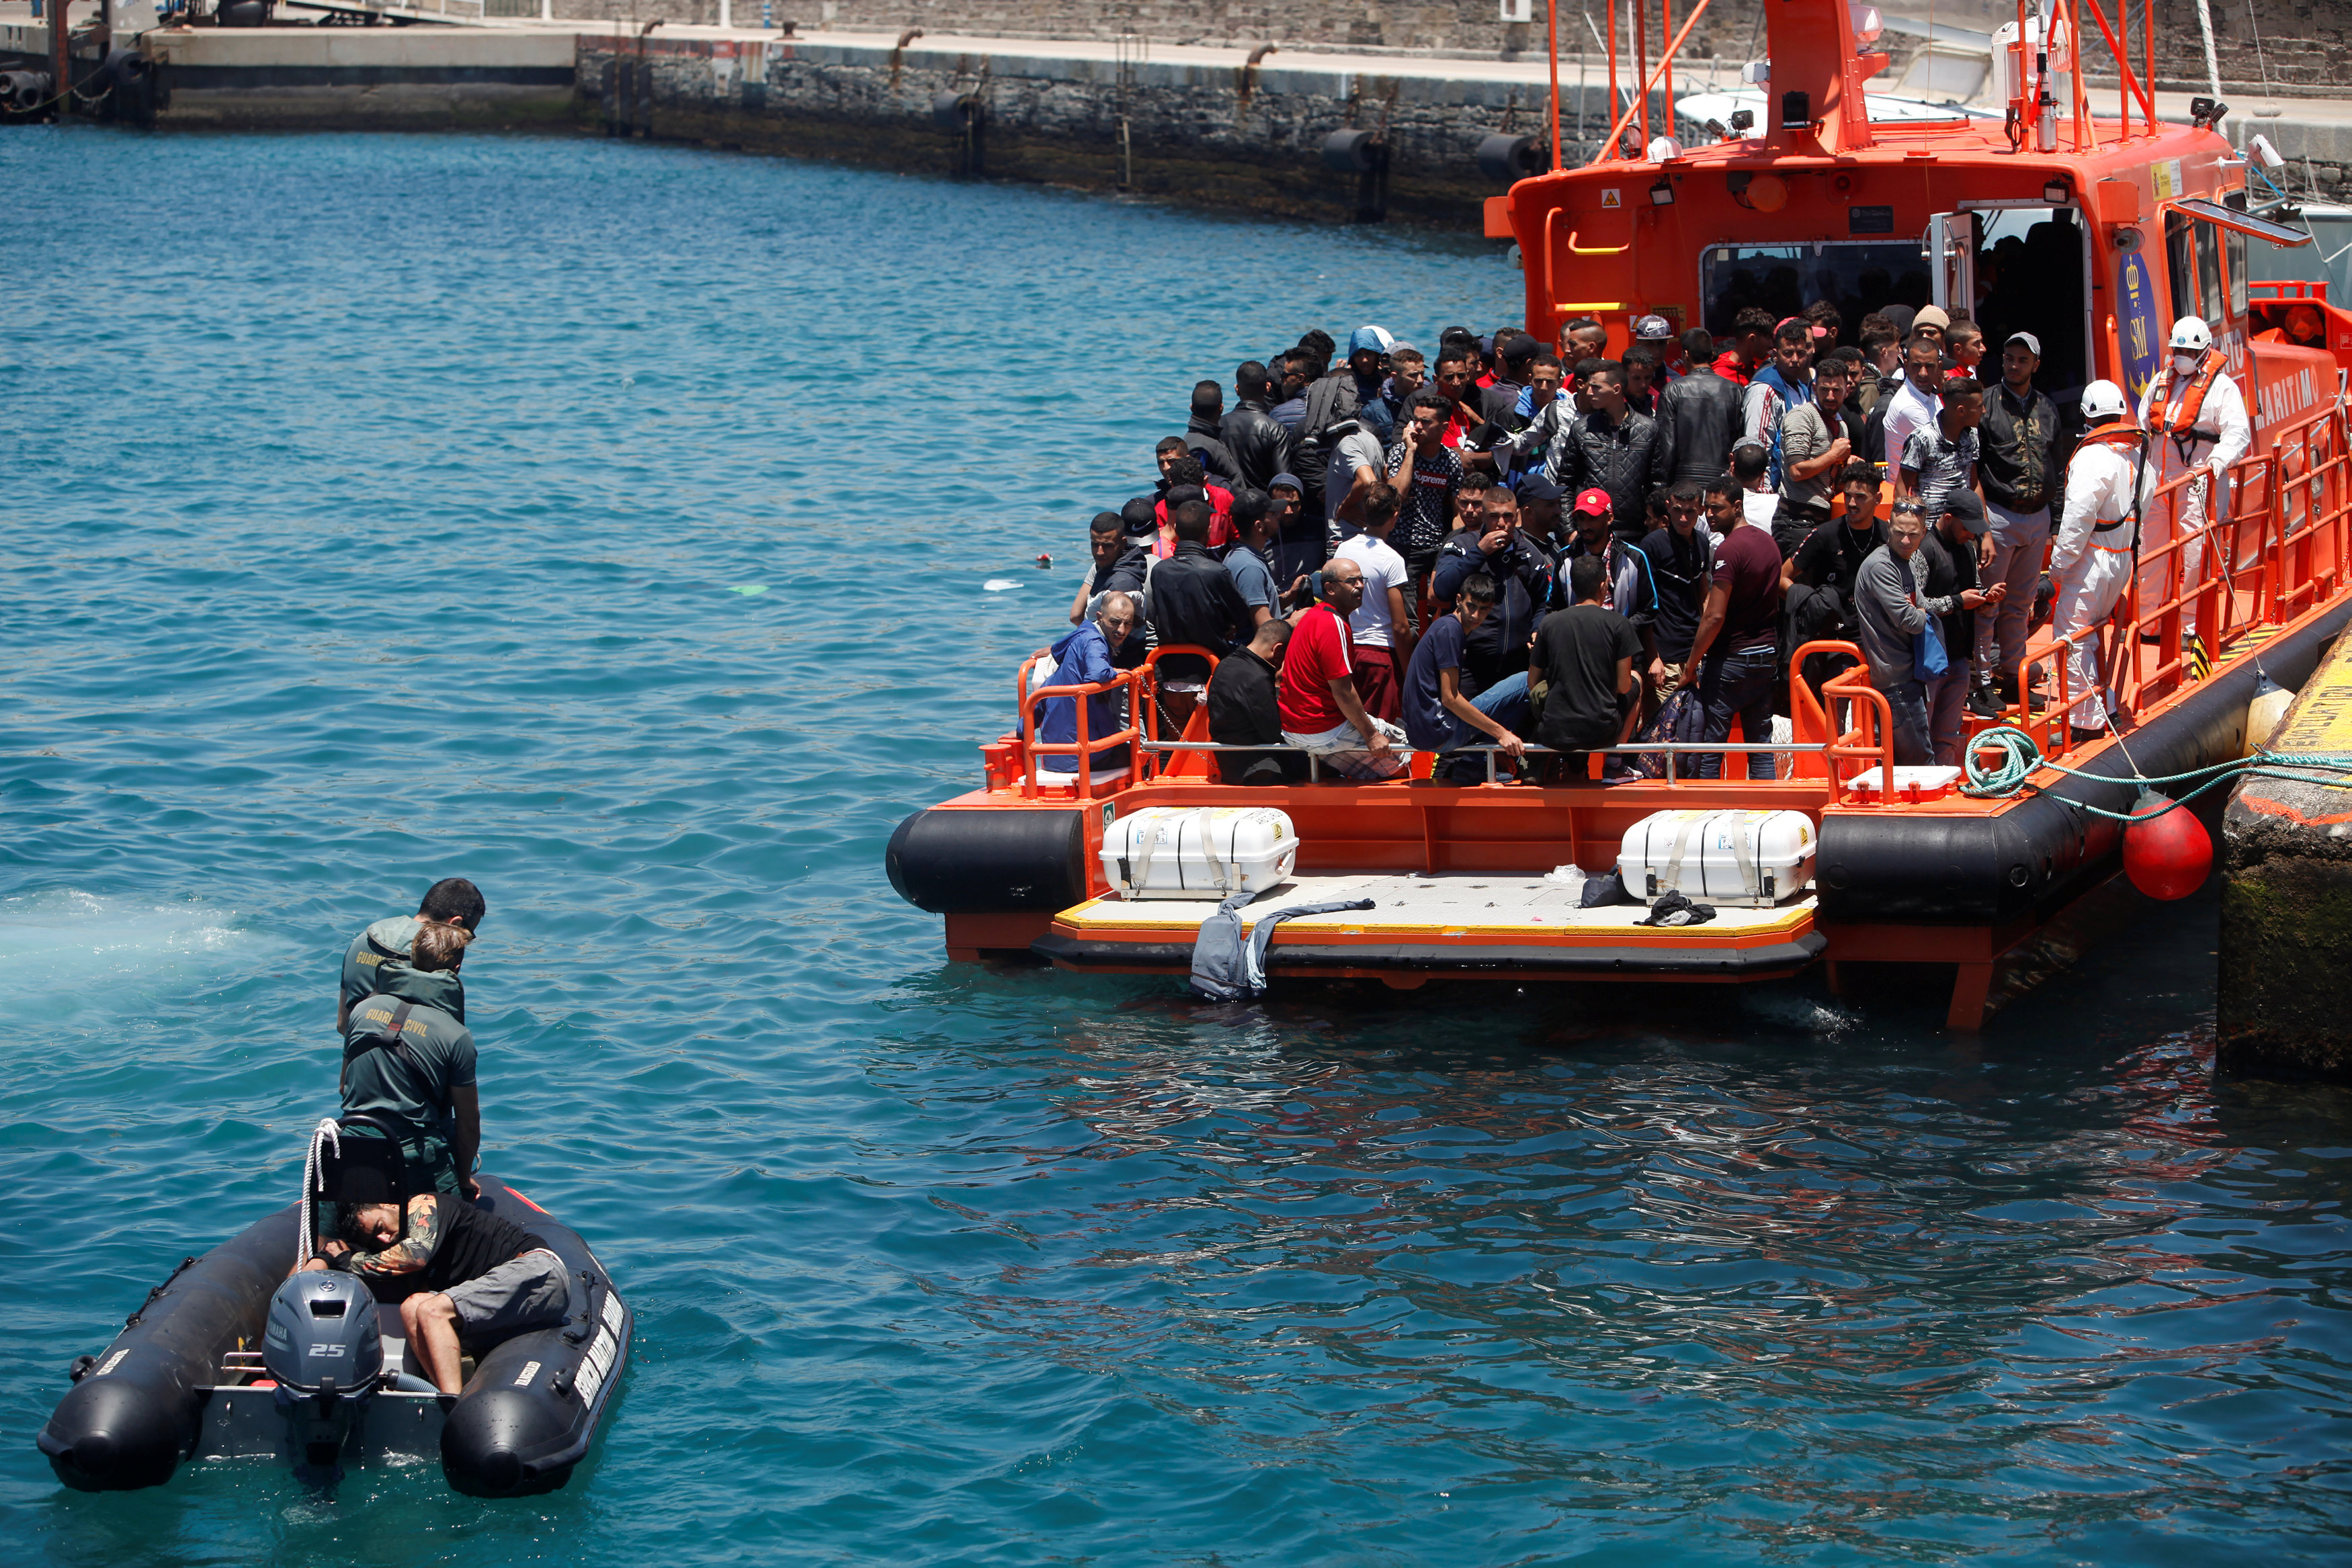 مهاجر تم اعتراضه على متن قارب خشبي تم إنقاذه من قبل حراس إسبان بعد قفزه في البحر من قارب الإنقاذ لدى وصوله إلى ميناء تريفة ، جنوب اسبانيا في 6 يوليو ، 2018. جون نازكا/رويترز